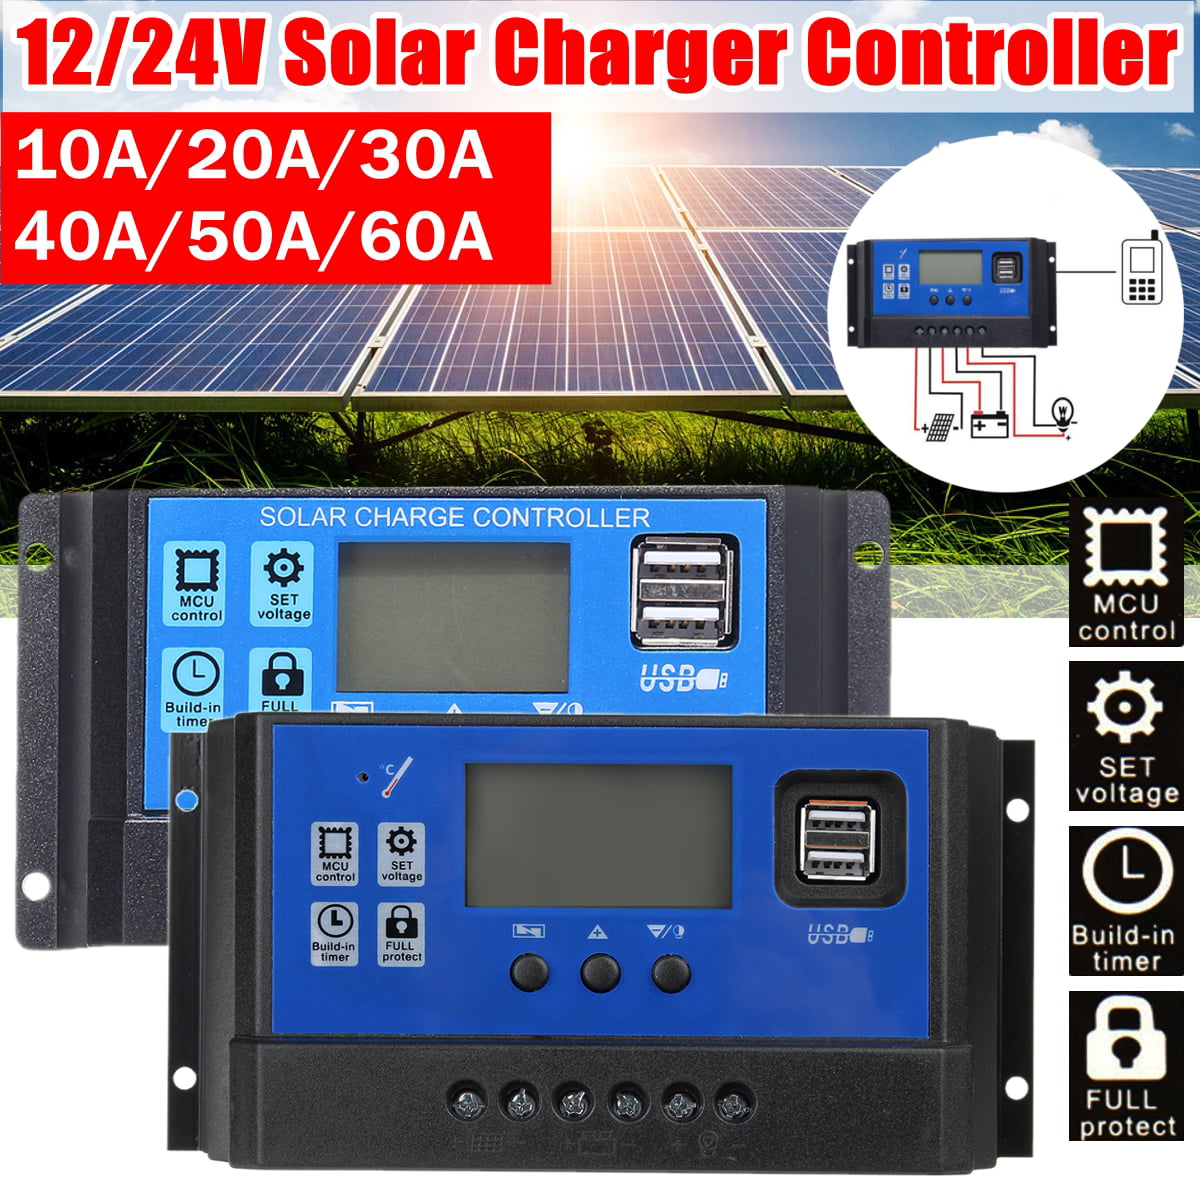 20A SOLAR PANEL CHARGE CONTROLLER REGULATOR 20AMP 12 24 VOLT 12V 24V DIGITAL LED 